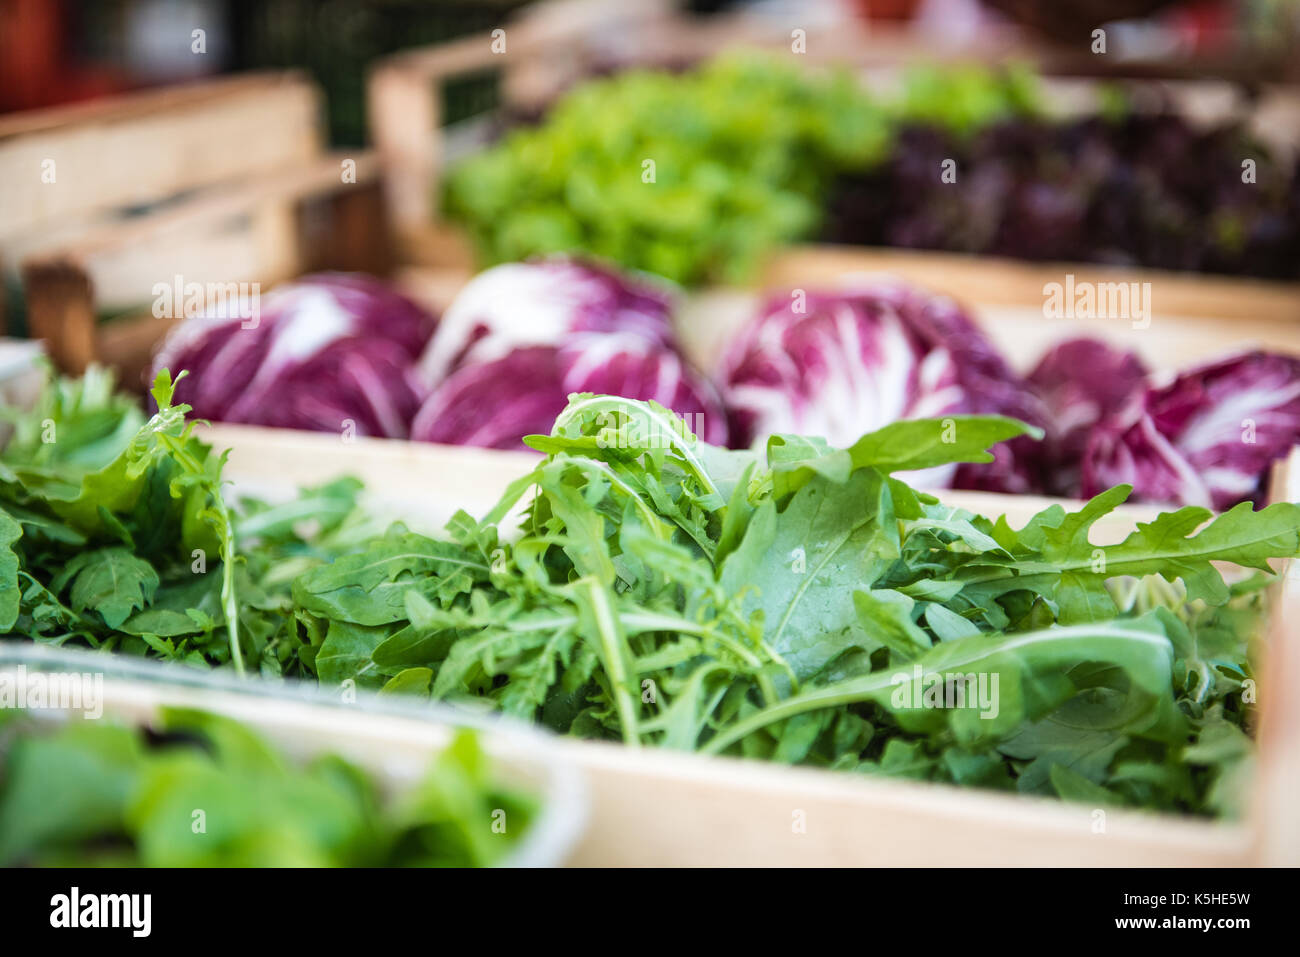 Dettaglio di insalata di rucola sul mercato in stallo il fuoco selettivo con varie verdure colorate in background Foto Stock